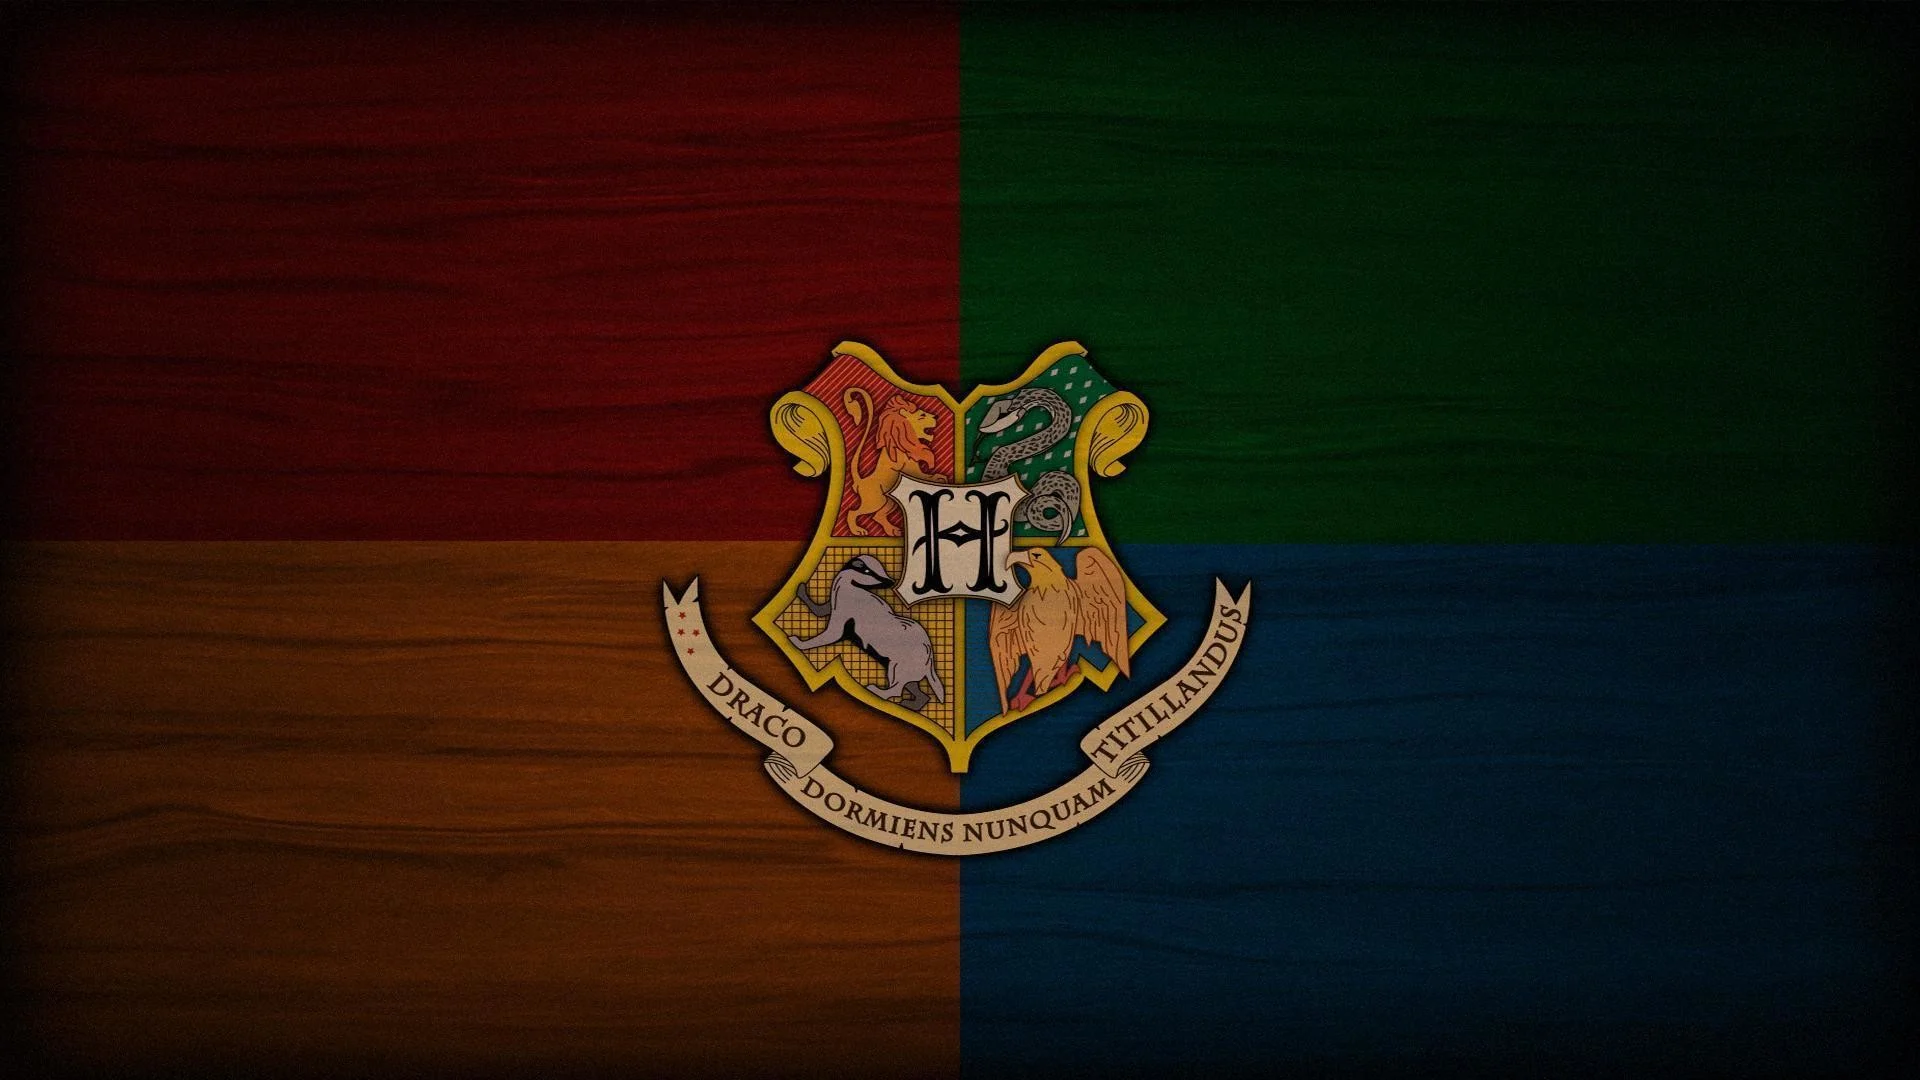 A Hogwarts wallpaper I put together (1920×1080) : harrypotter